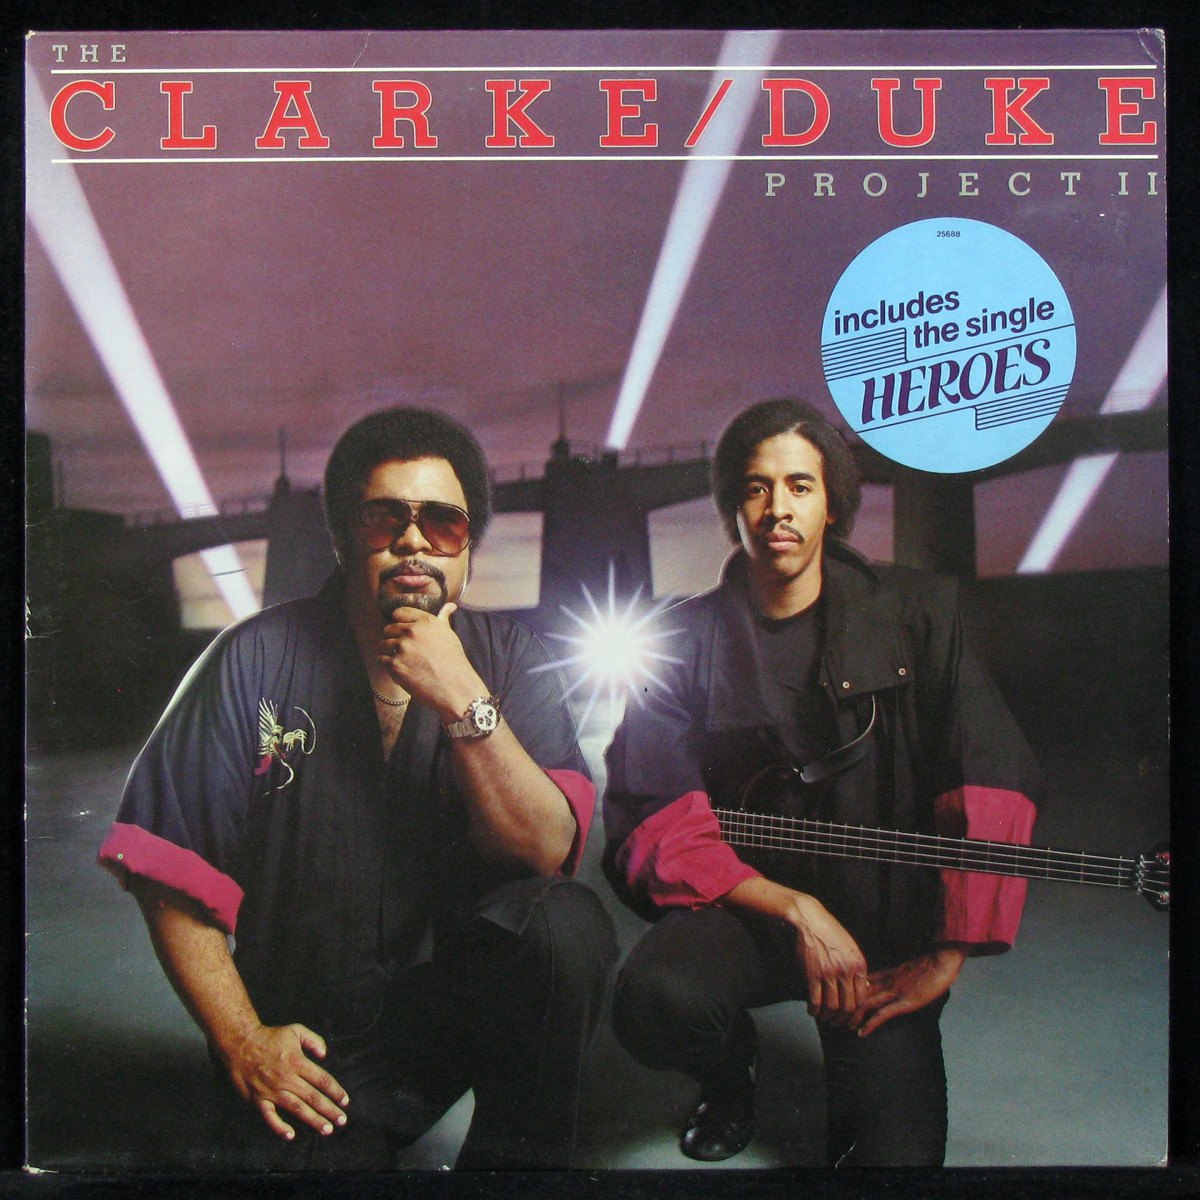 LP Stanley Clarke / George Duke — Clarke / Duke Project II фото